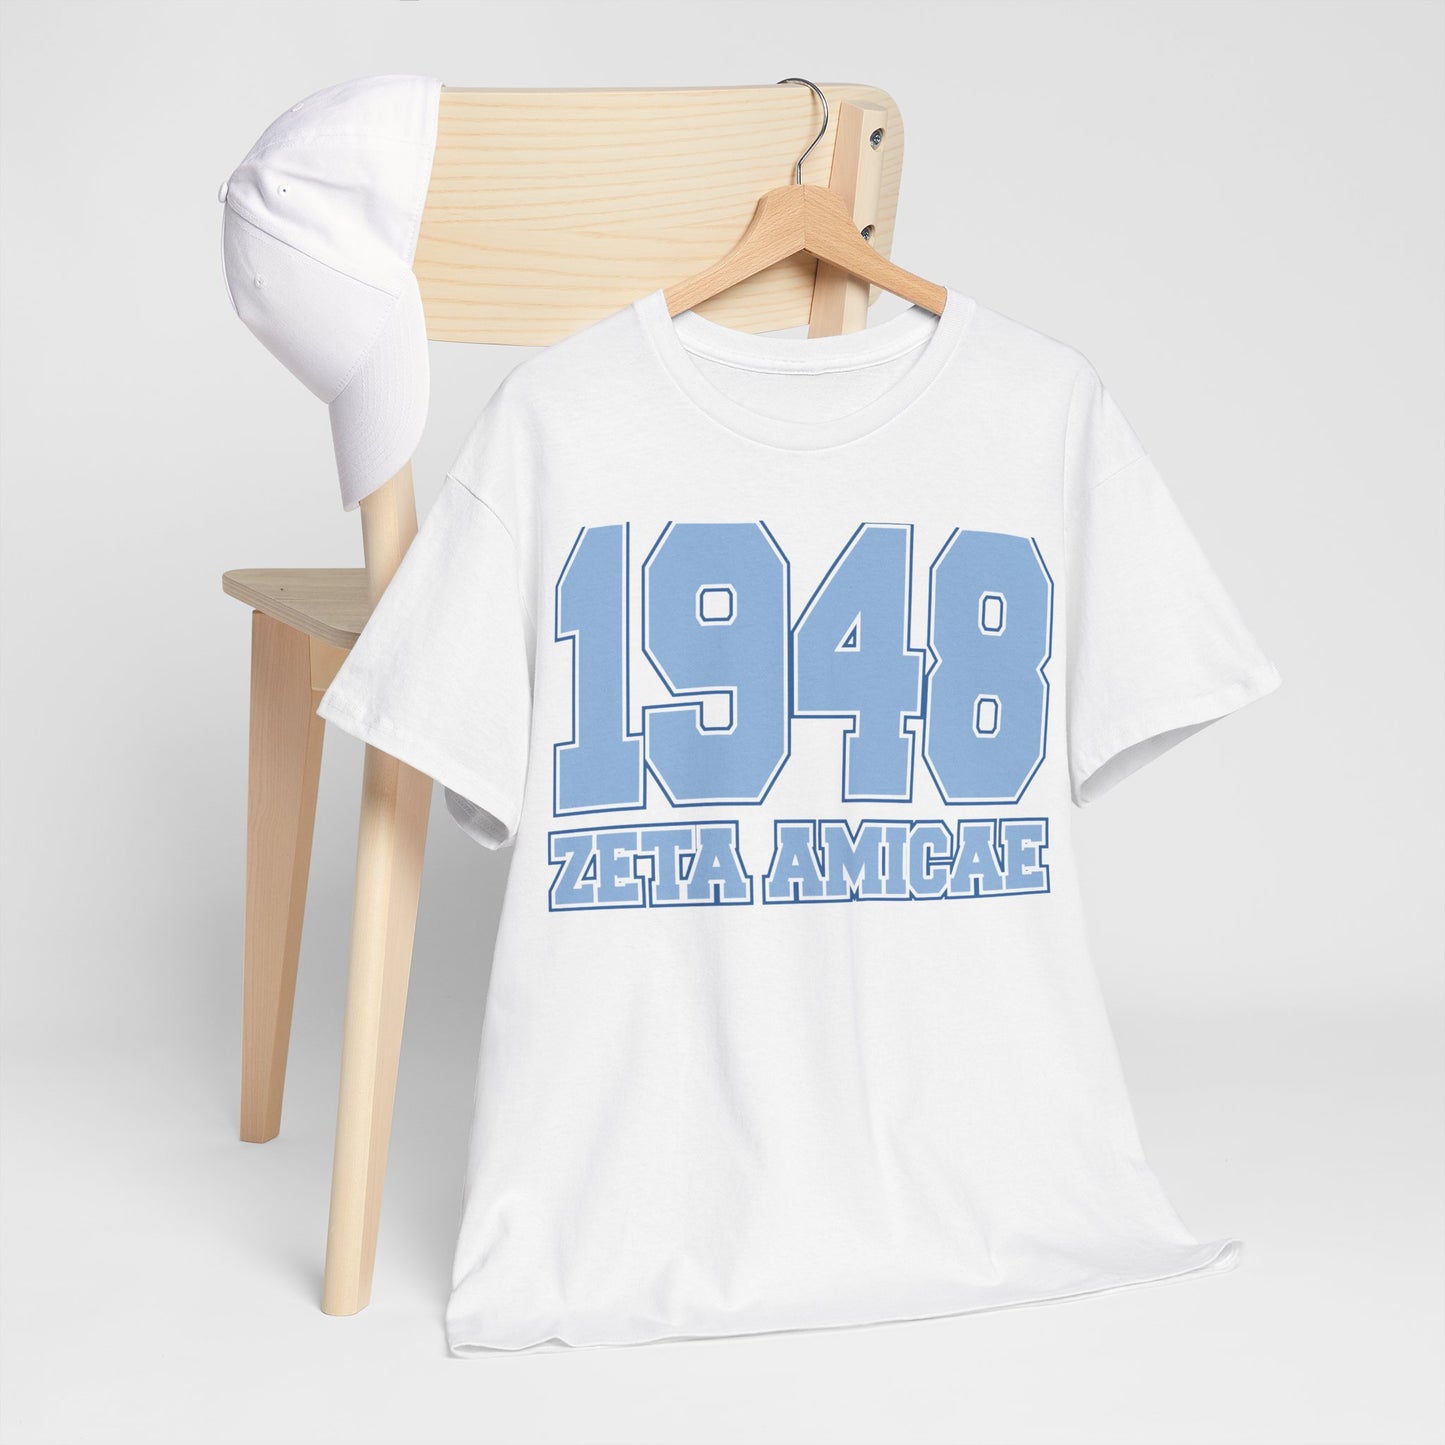 1948 Zeta Amicae T-Shirt